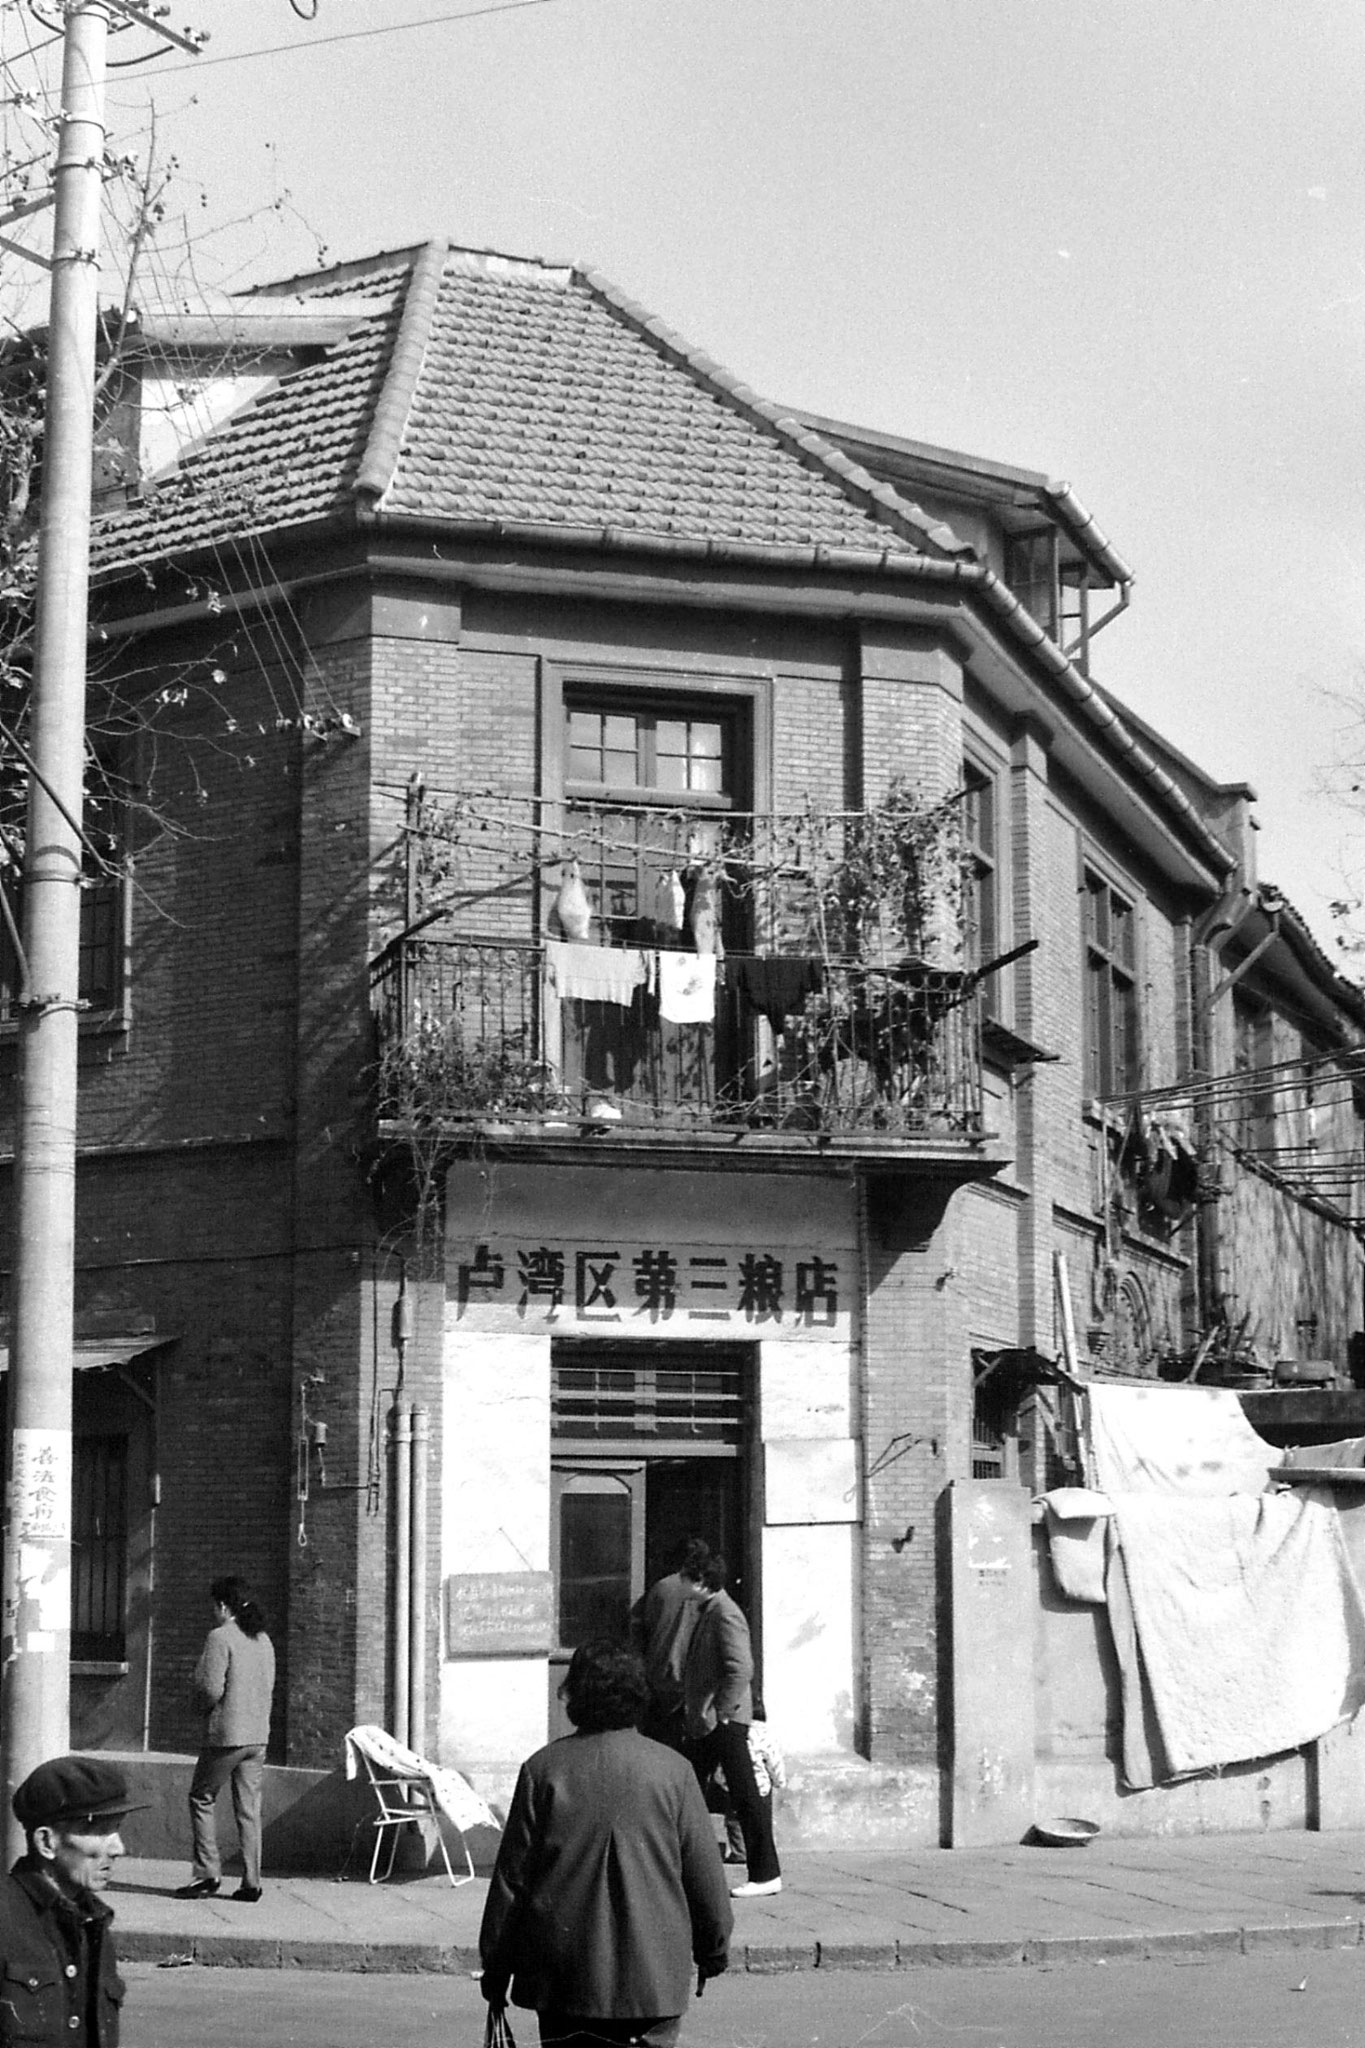 15/12/1988: 5: Nanchang Road